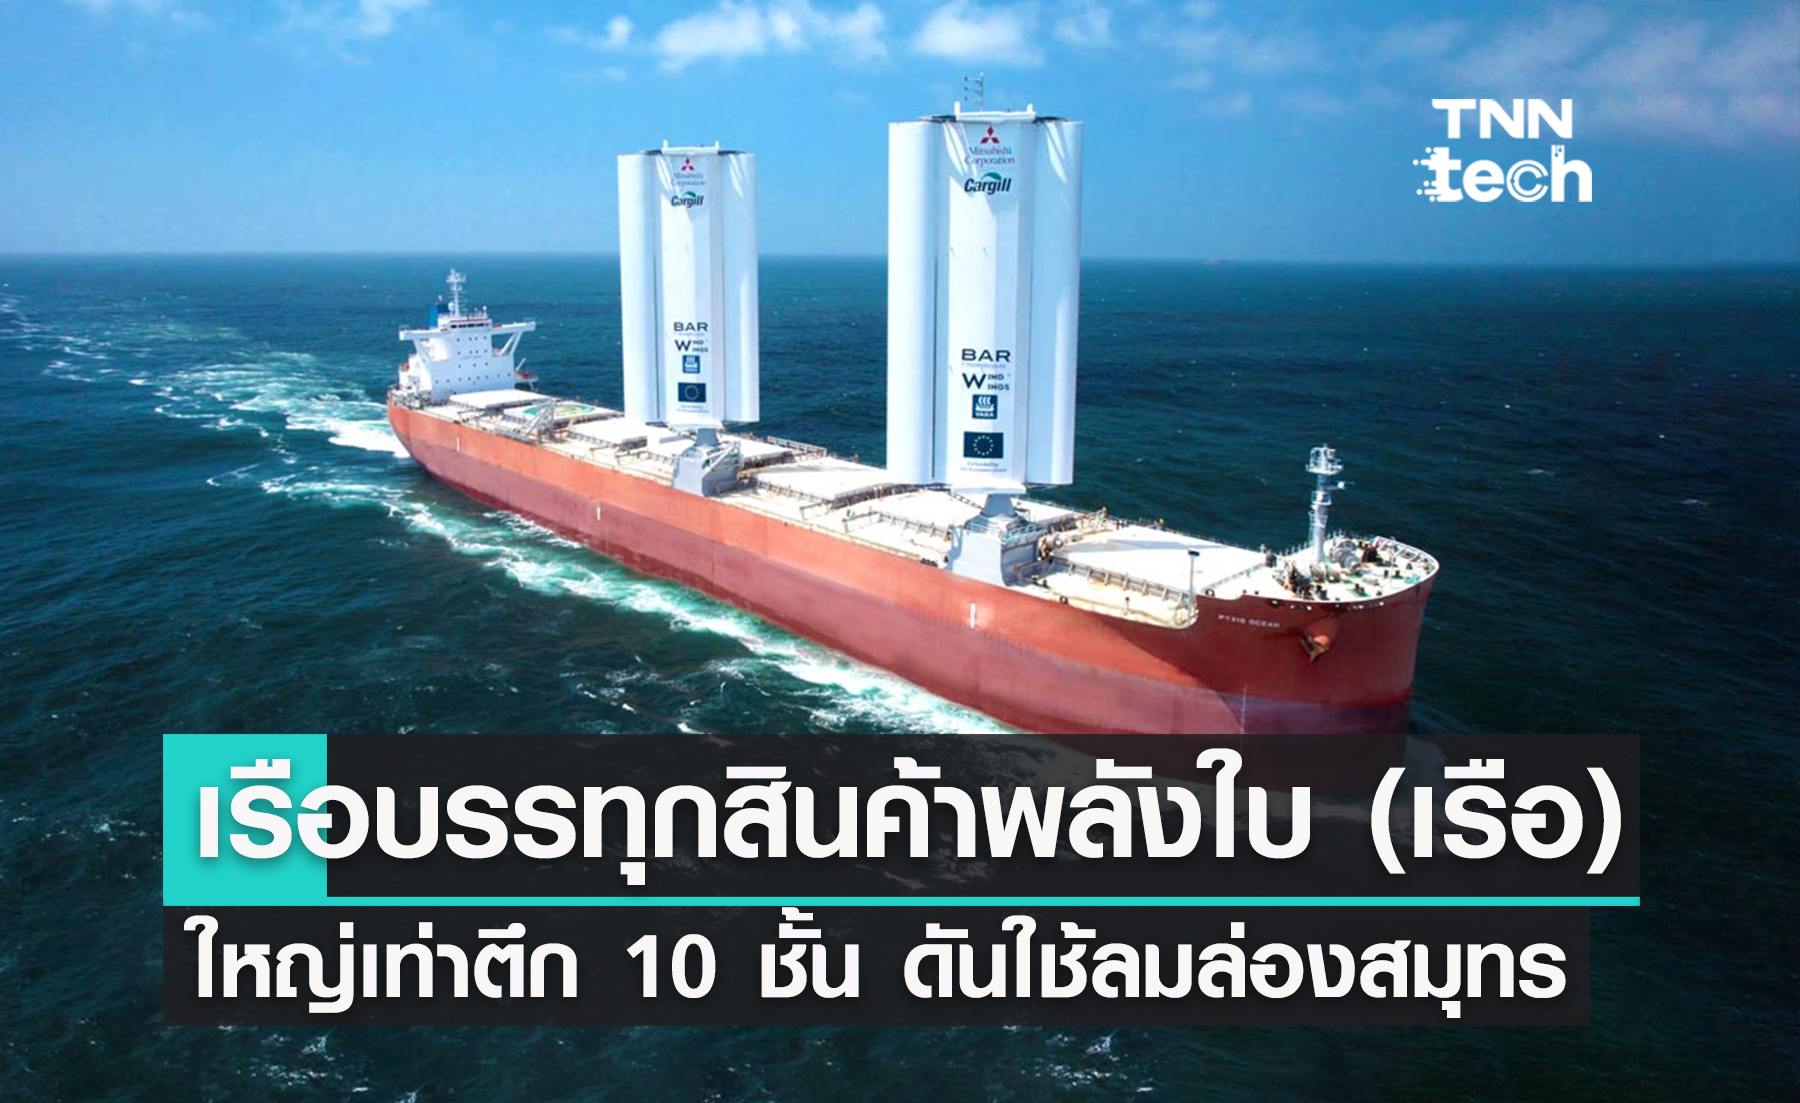 เริ่มแล้ว ! “Pyxis Ocean” เรือบรรทุกสินค้าพลังใบ (เรือ) ใหญ่เท่าตึก 10 ชั้น ดันกลับมาใช้พลังงานลมล่องสมุทร